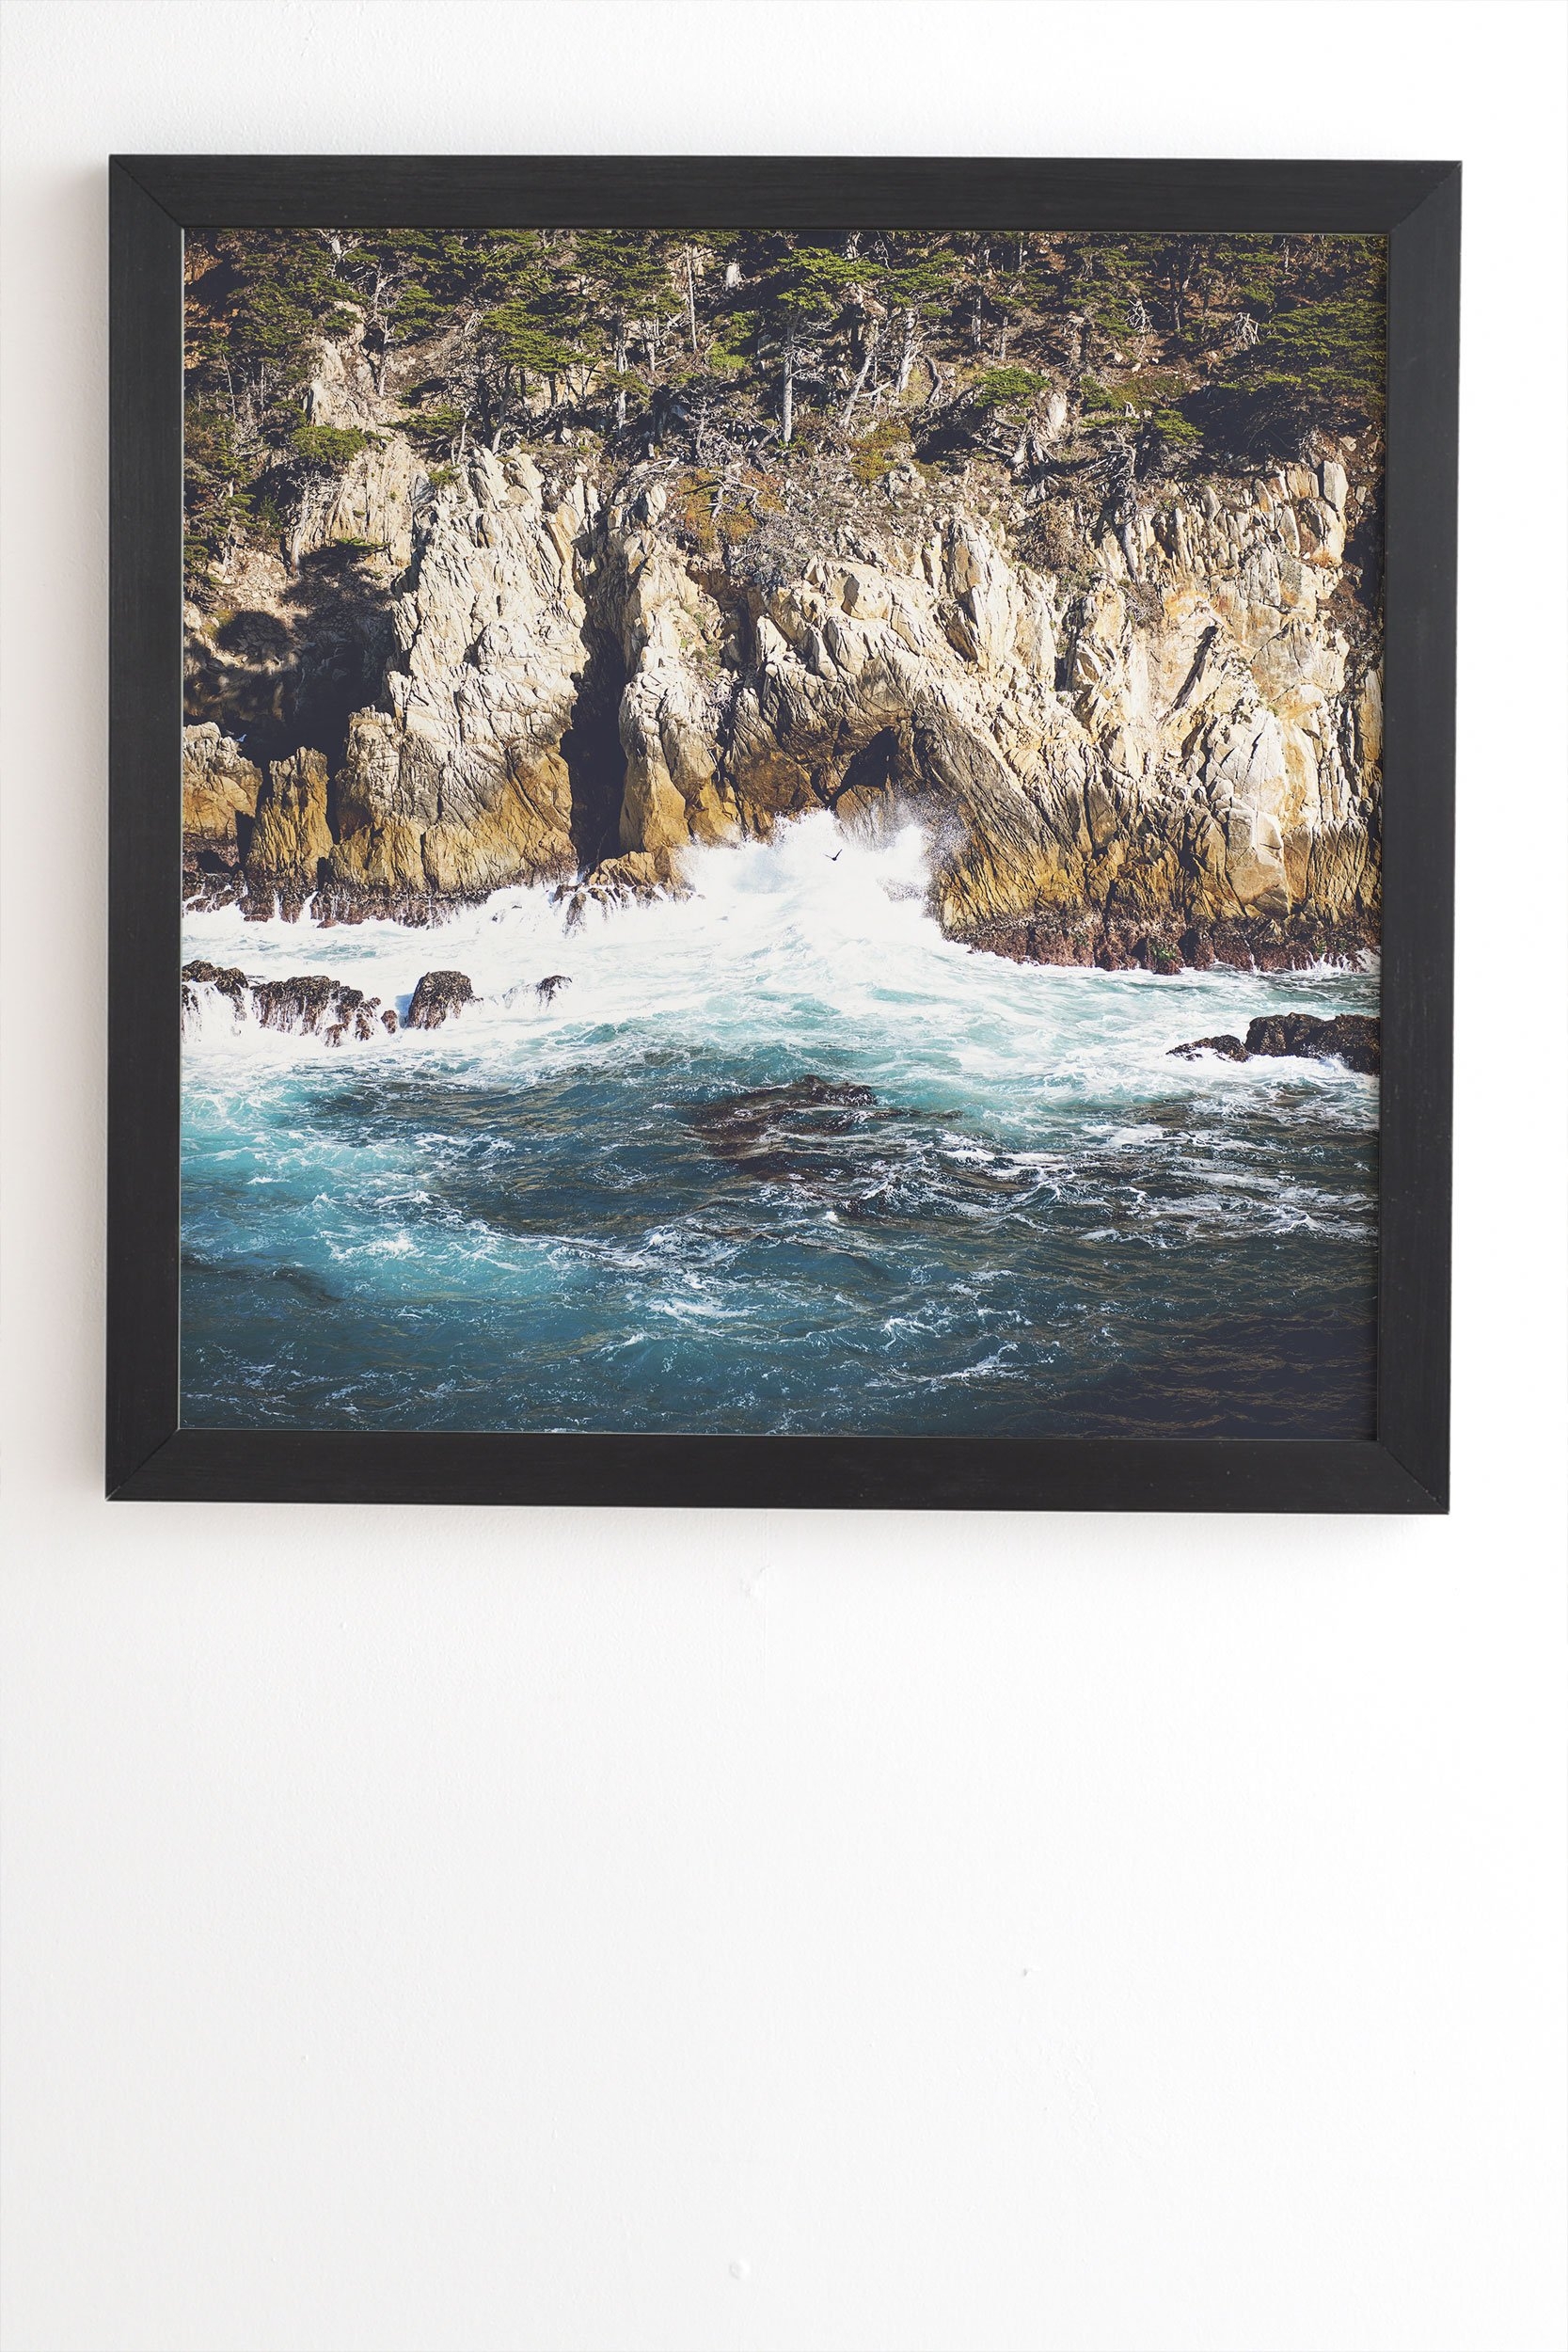 Bree Madden Land Sea Black Framed Wall Art - 30" x 30" - Image 1